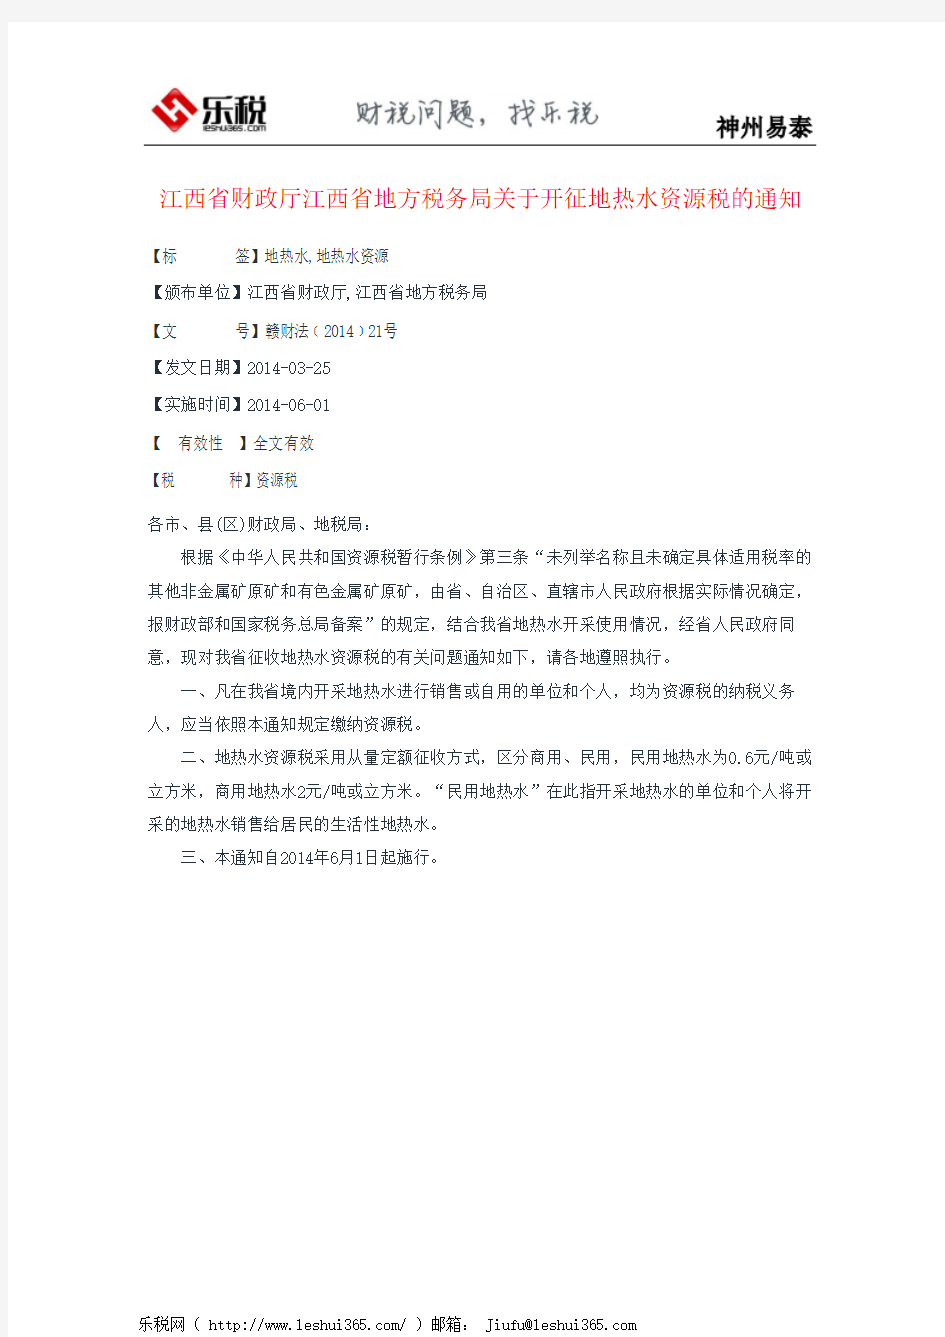 江西省财政厅江西省地方税务局关于开征地热水资源税的通知